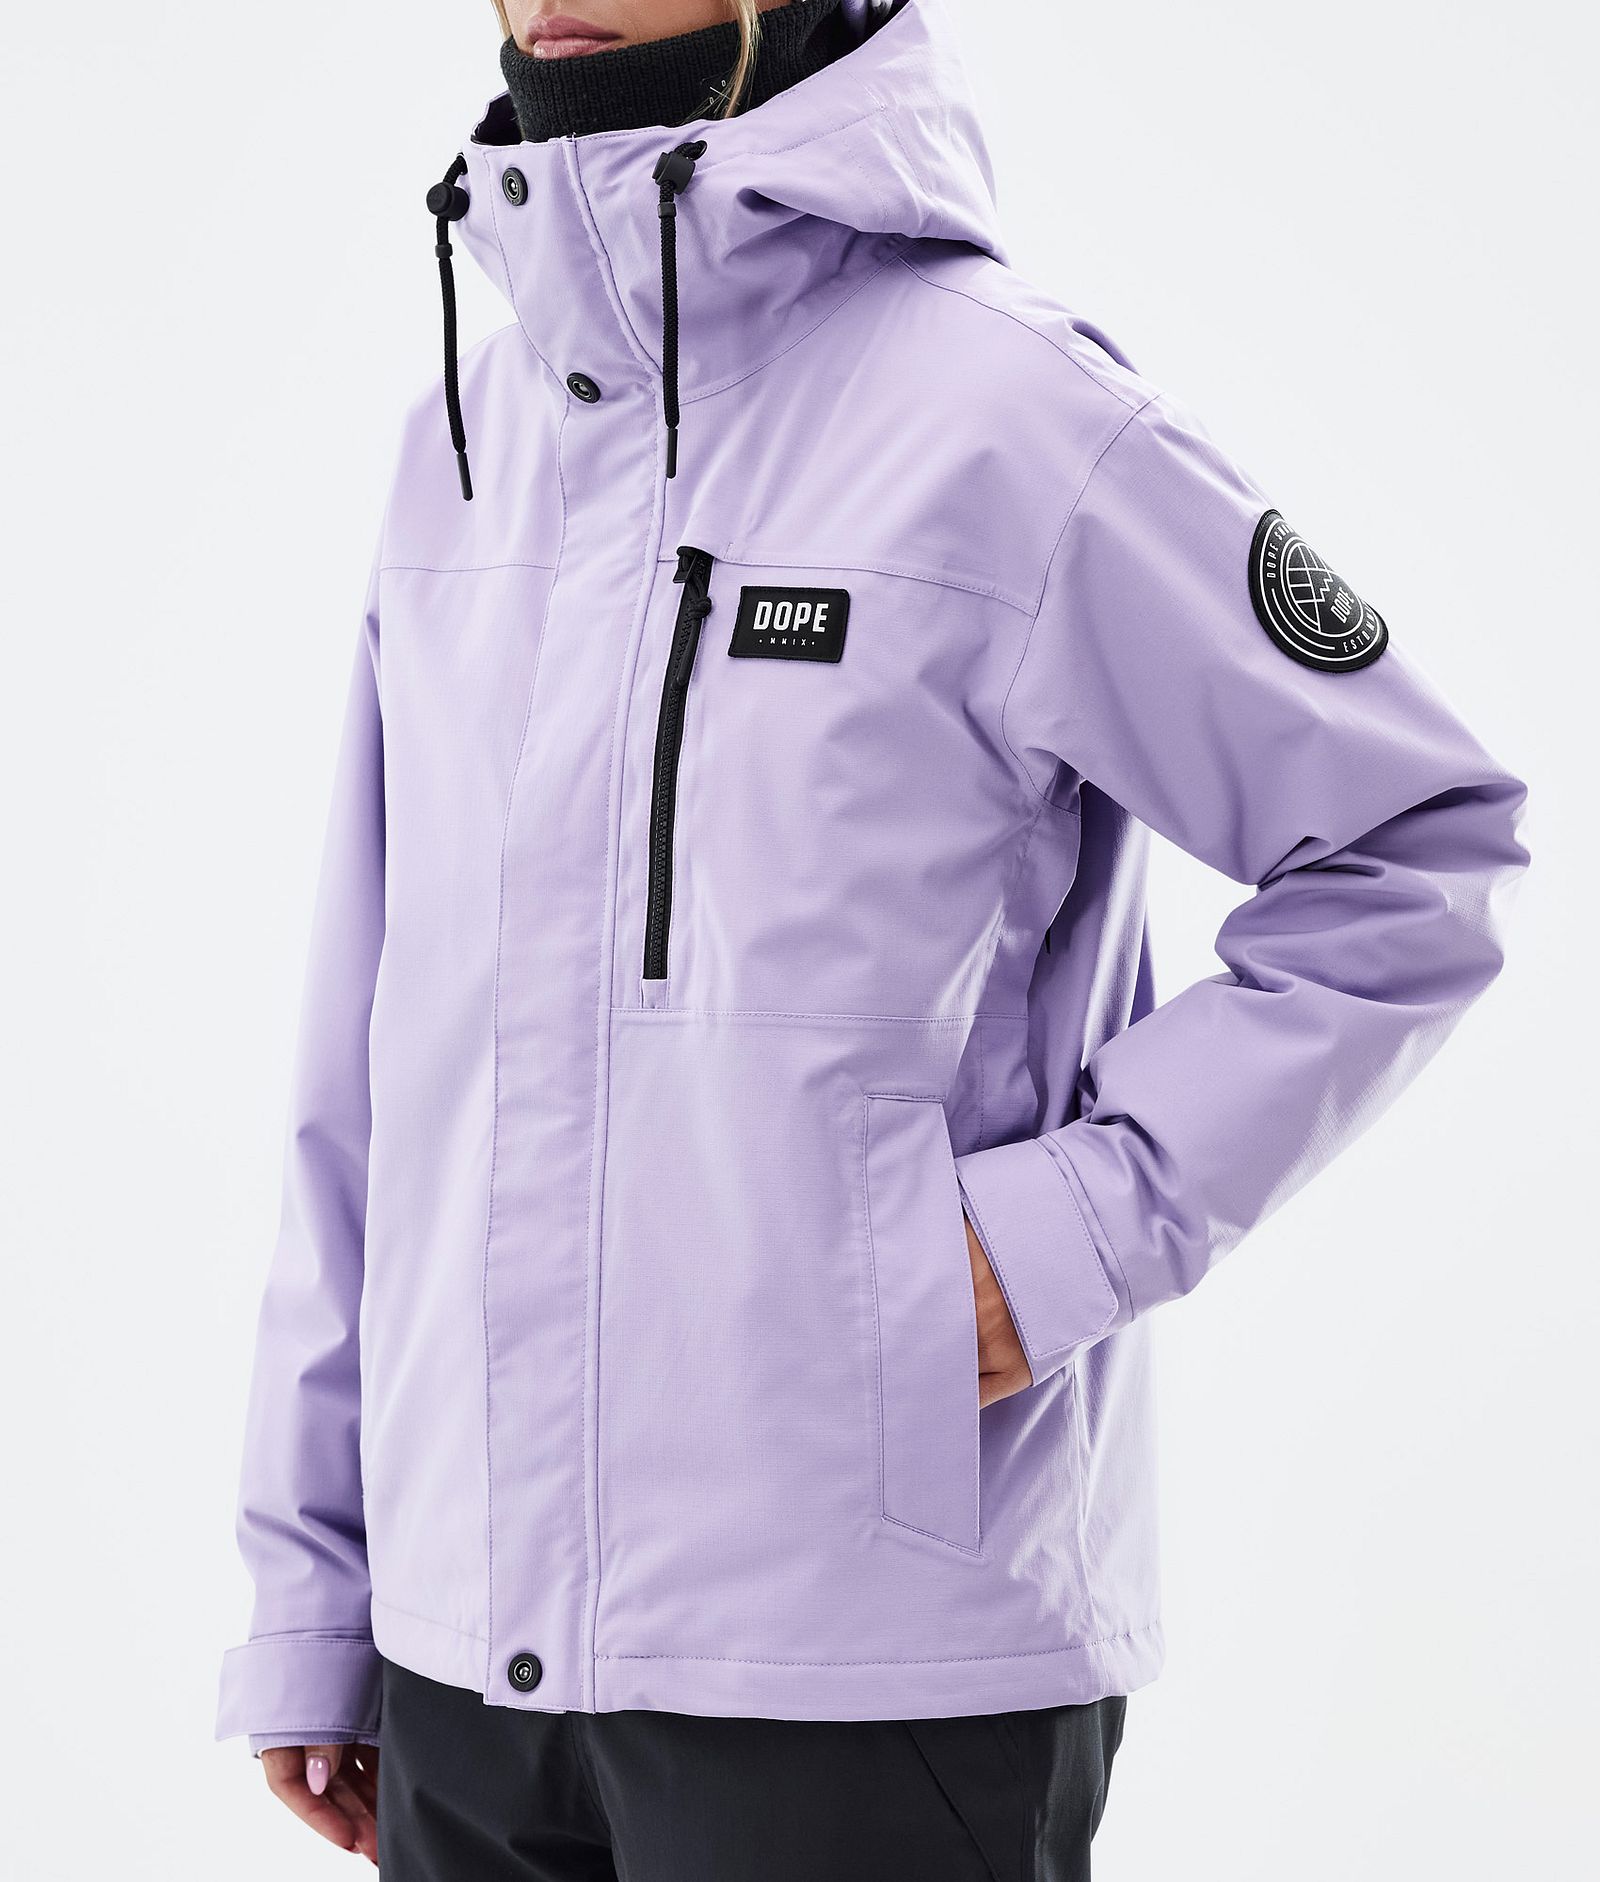 Dope Blizzard W Full Zip Ski Jacket Women Faded Violet